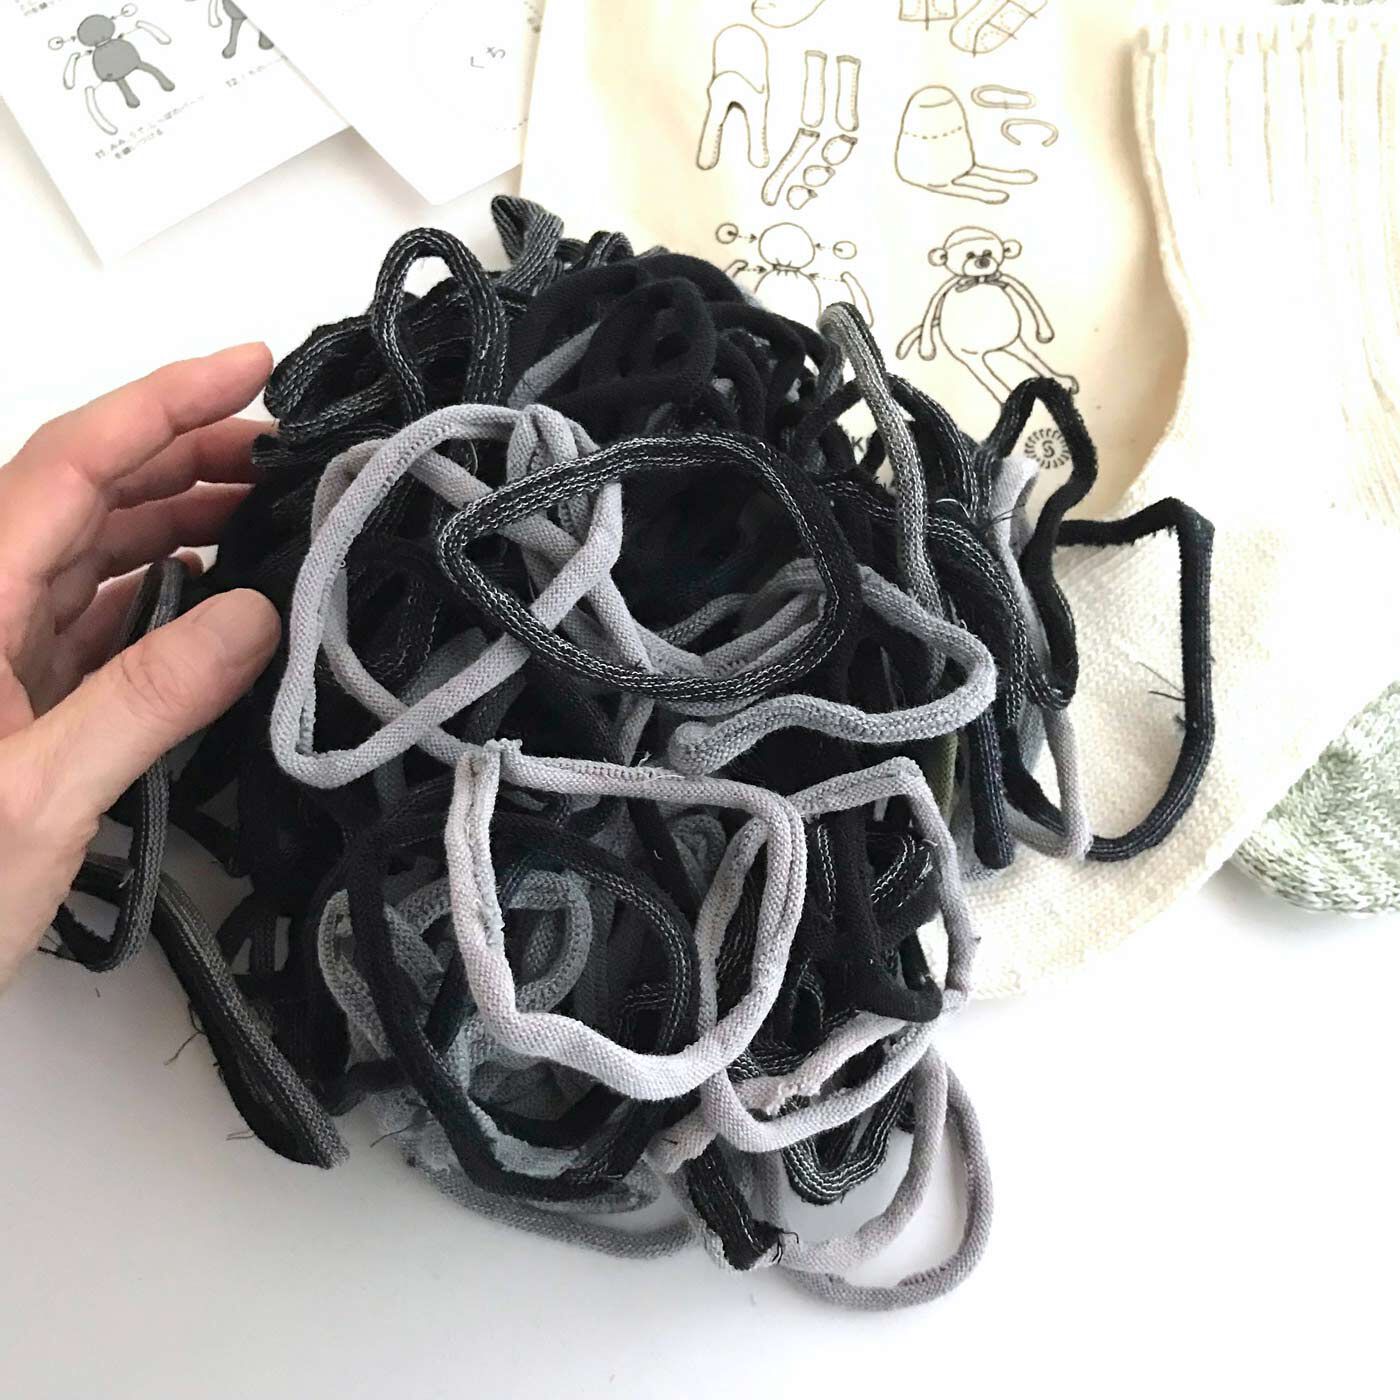 フェリシモの雑貨 Kraso|残糸で編んだ靴下と端材で作るおさるのぬいぐるみキット〈巾着付き〉|この輪っかは、靴下のつま先を縫製する際に切り取られる端材。おもしろい！